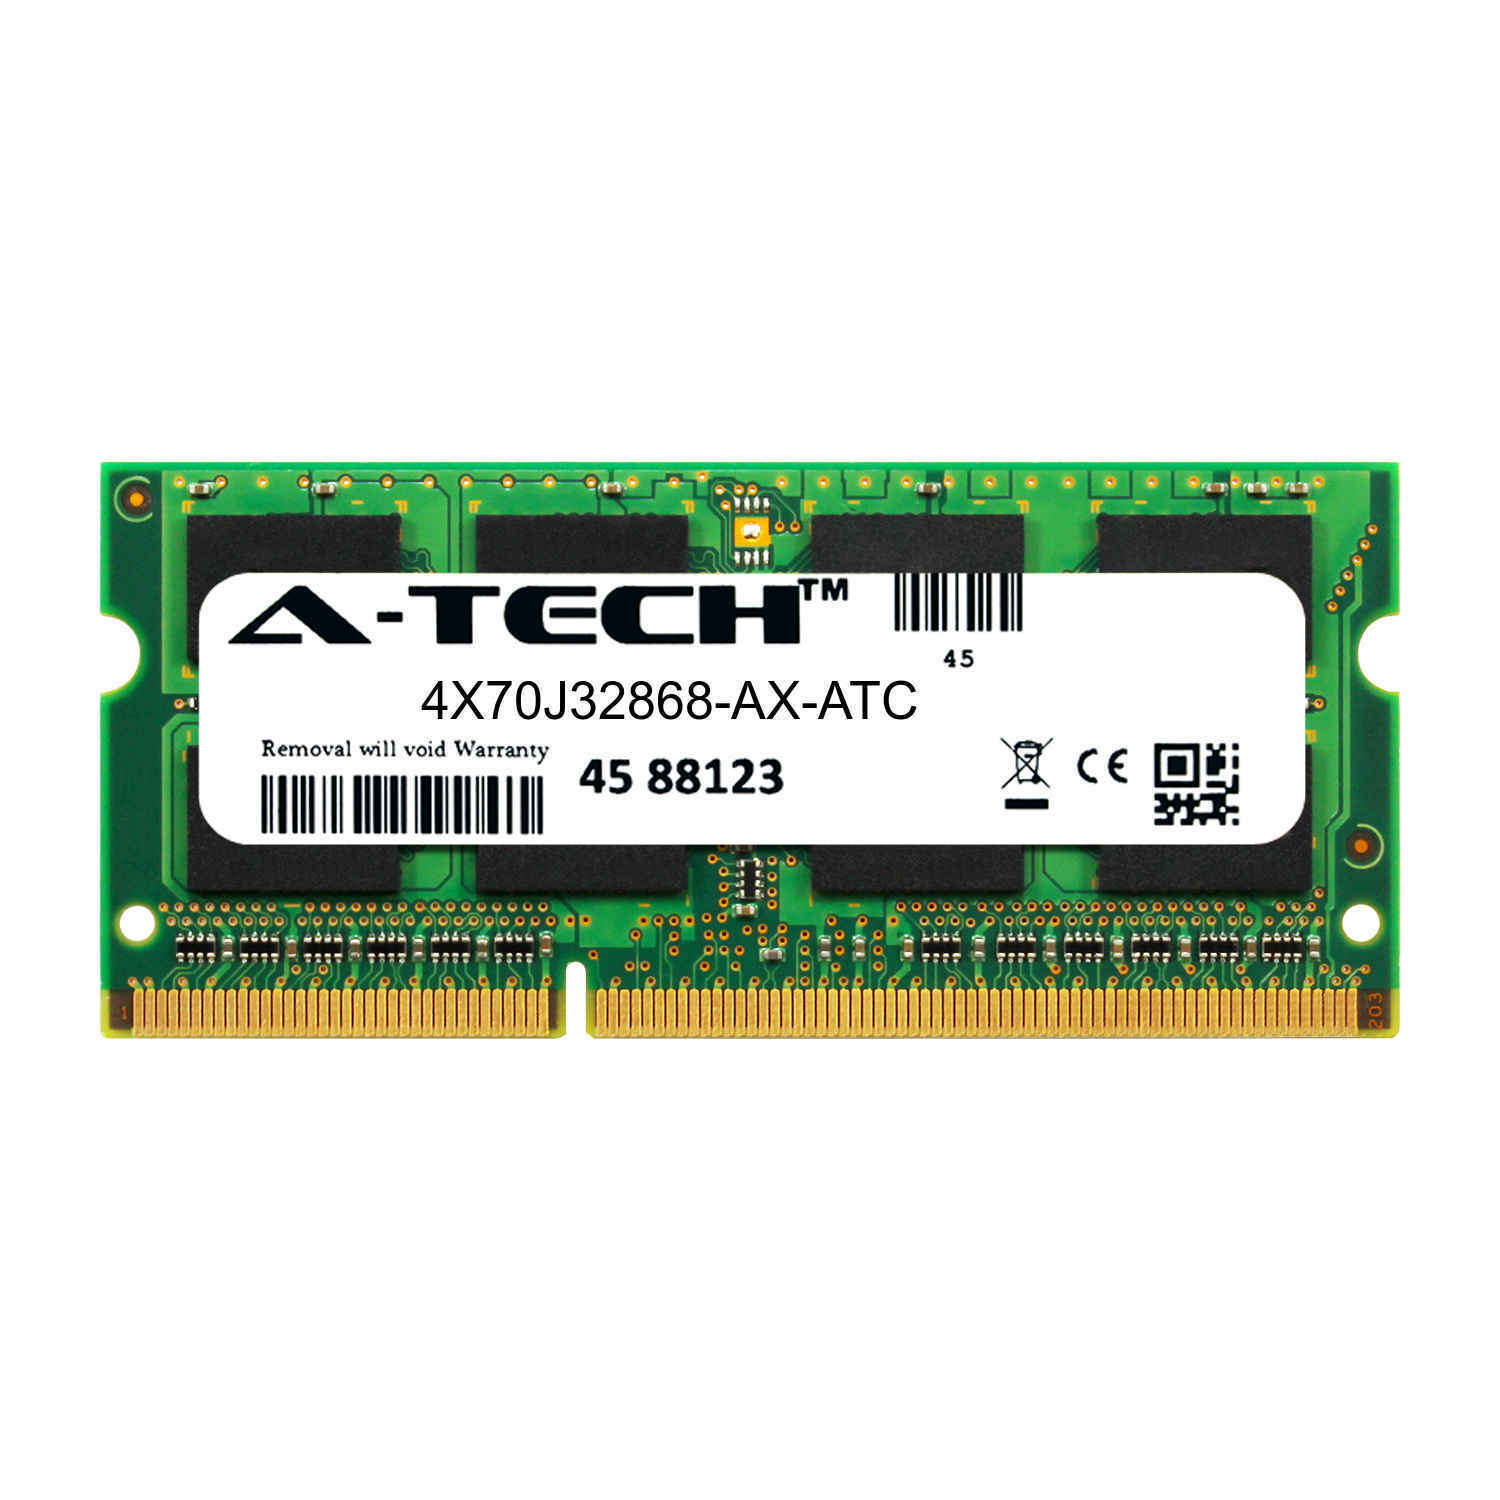 16GB DDR3 PC3-12800 1600MHz SODIMM (Axiom 4X70J32868-AX Equivalent) Memory RAM